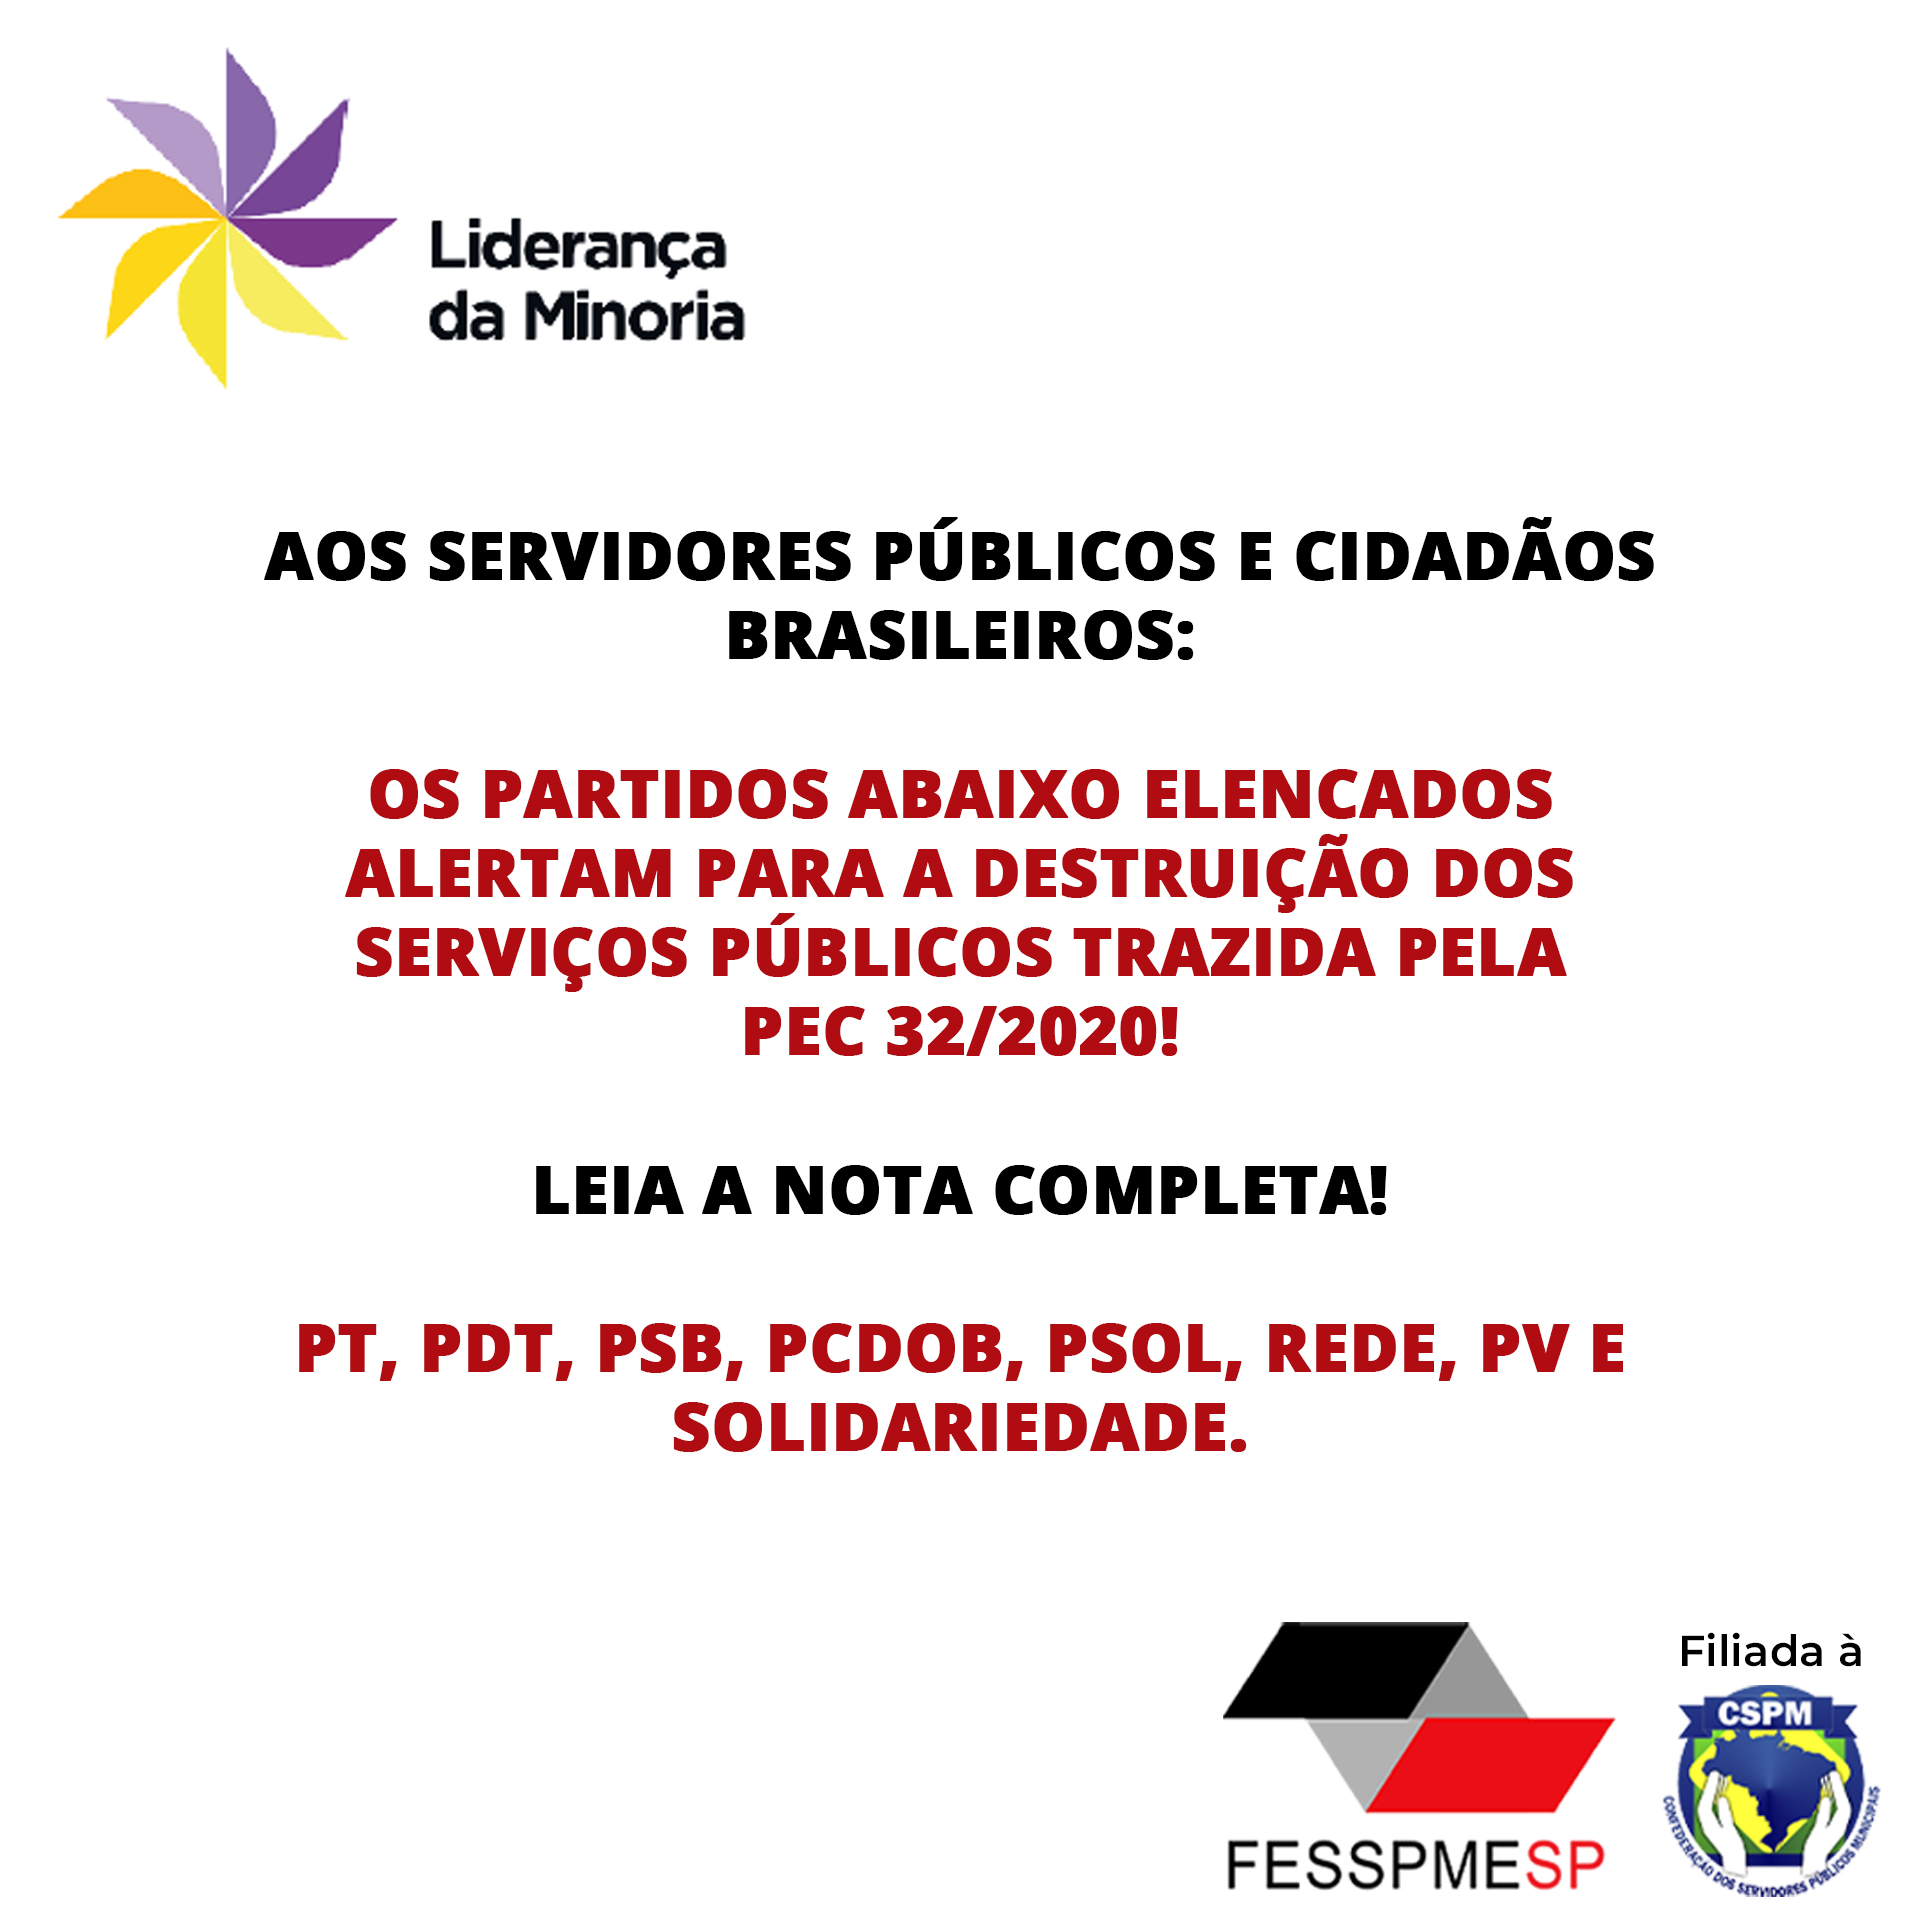 Liderança da Minoria: Nota aos servidores públicos e cidadãos brasileiros